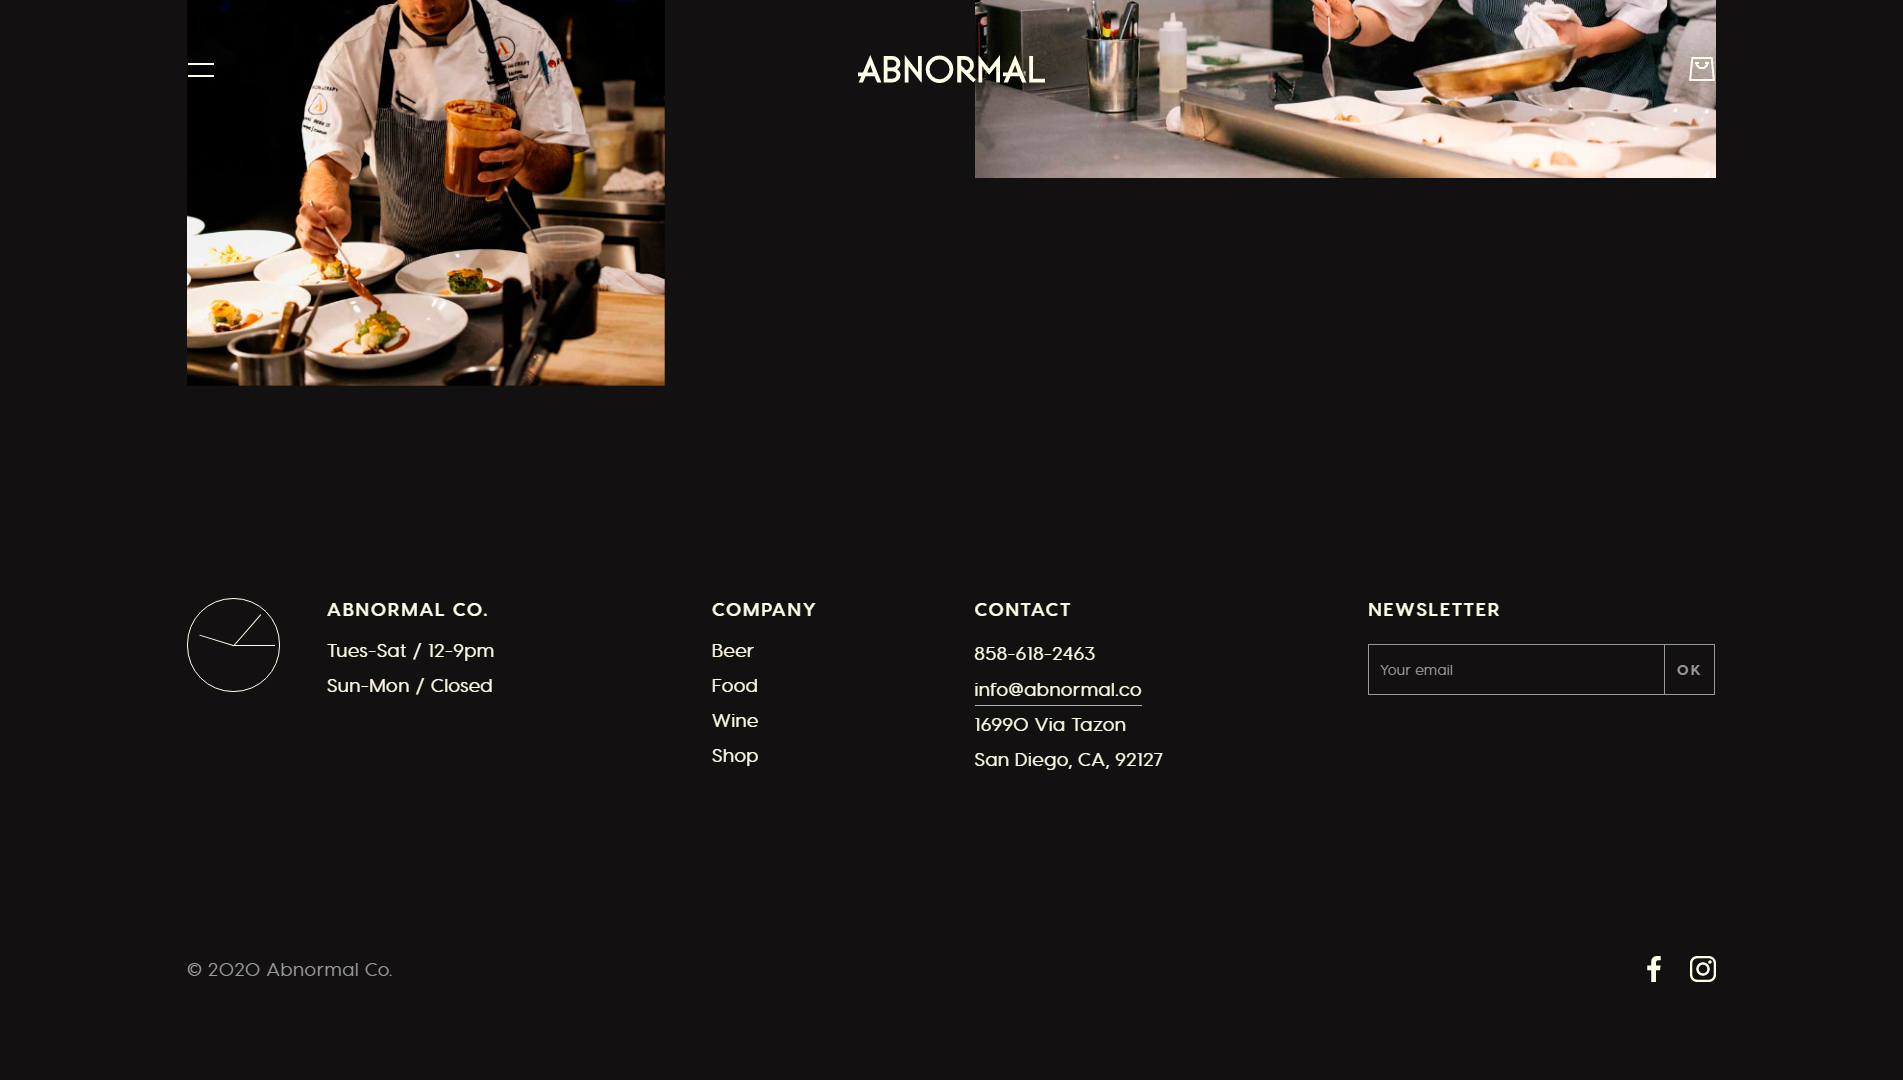 ejemplos-paginas-web-restaurante-abnormal-01-